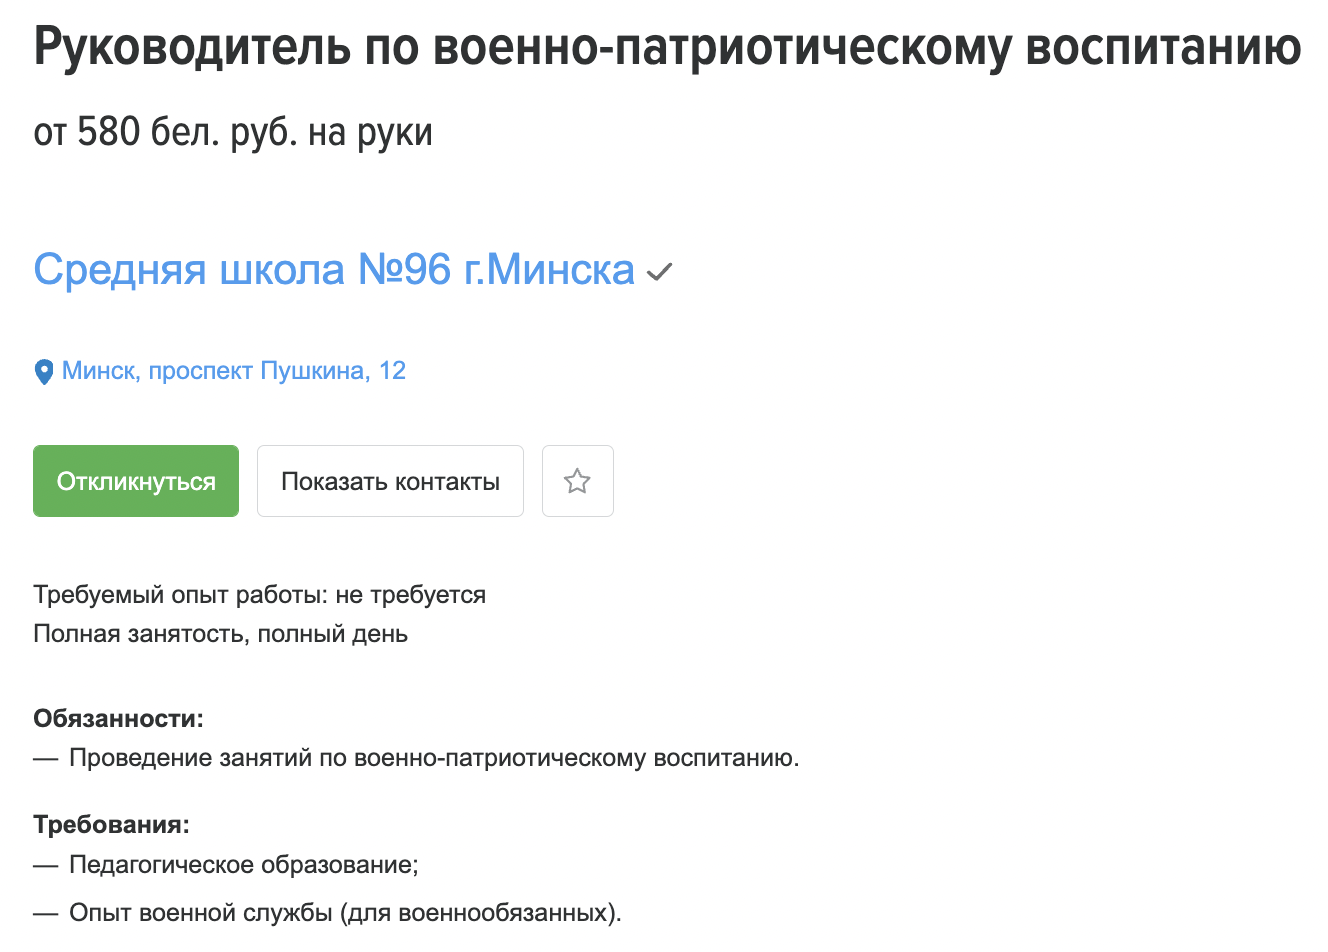 Беларусские школы ищут «военруков»: в сети появились вакансии, а в школьной программе, видимо, новый предмет